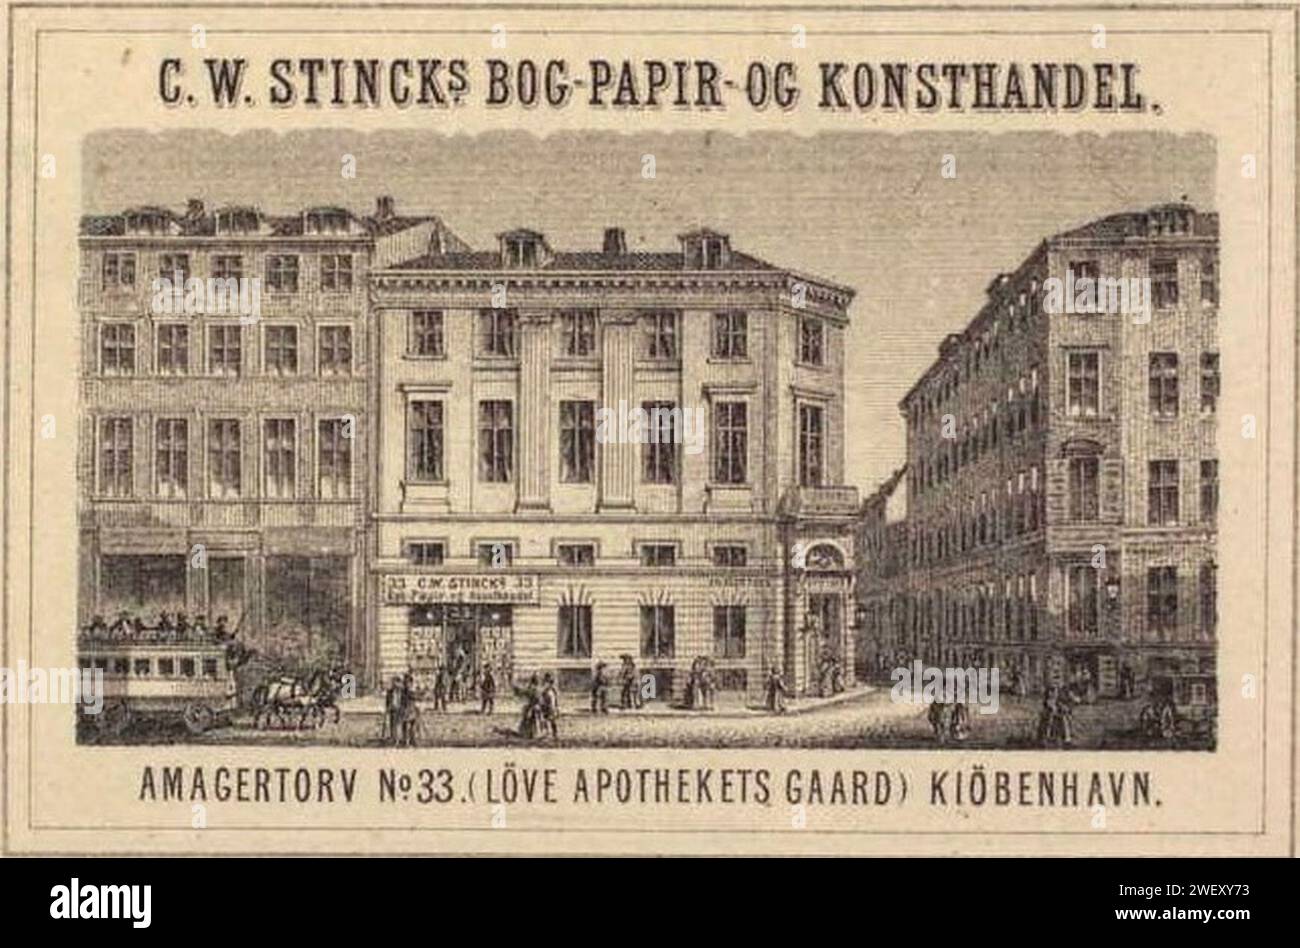 Amagertorv n. 33 med Løve Apoteks Gård, C. W. Stinck's Bog-, papir- og kunsthandel (2). Foto Stock